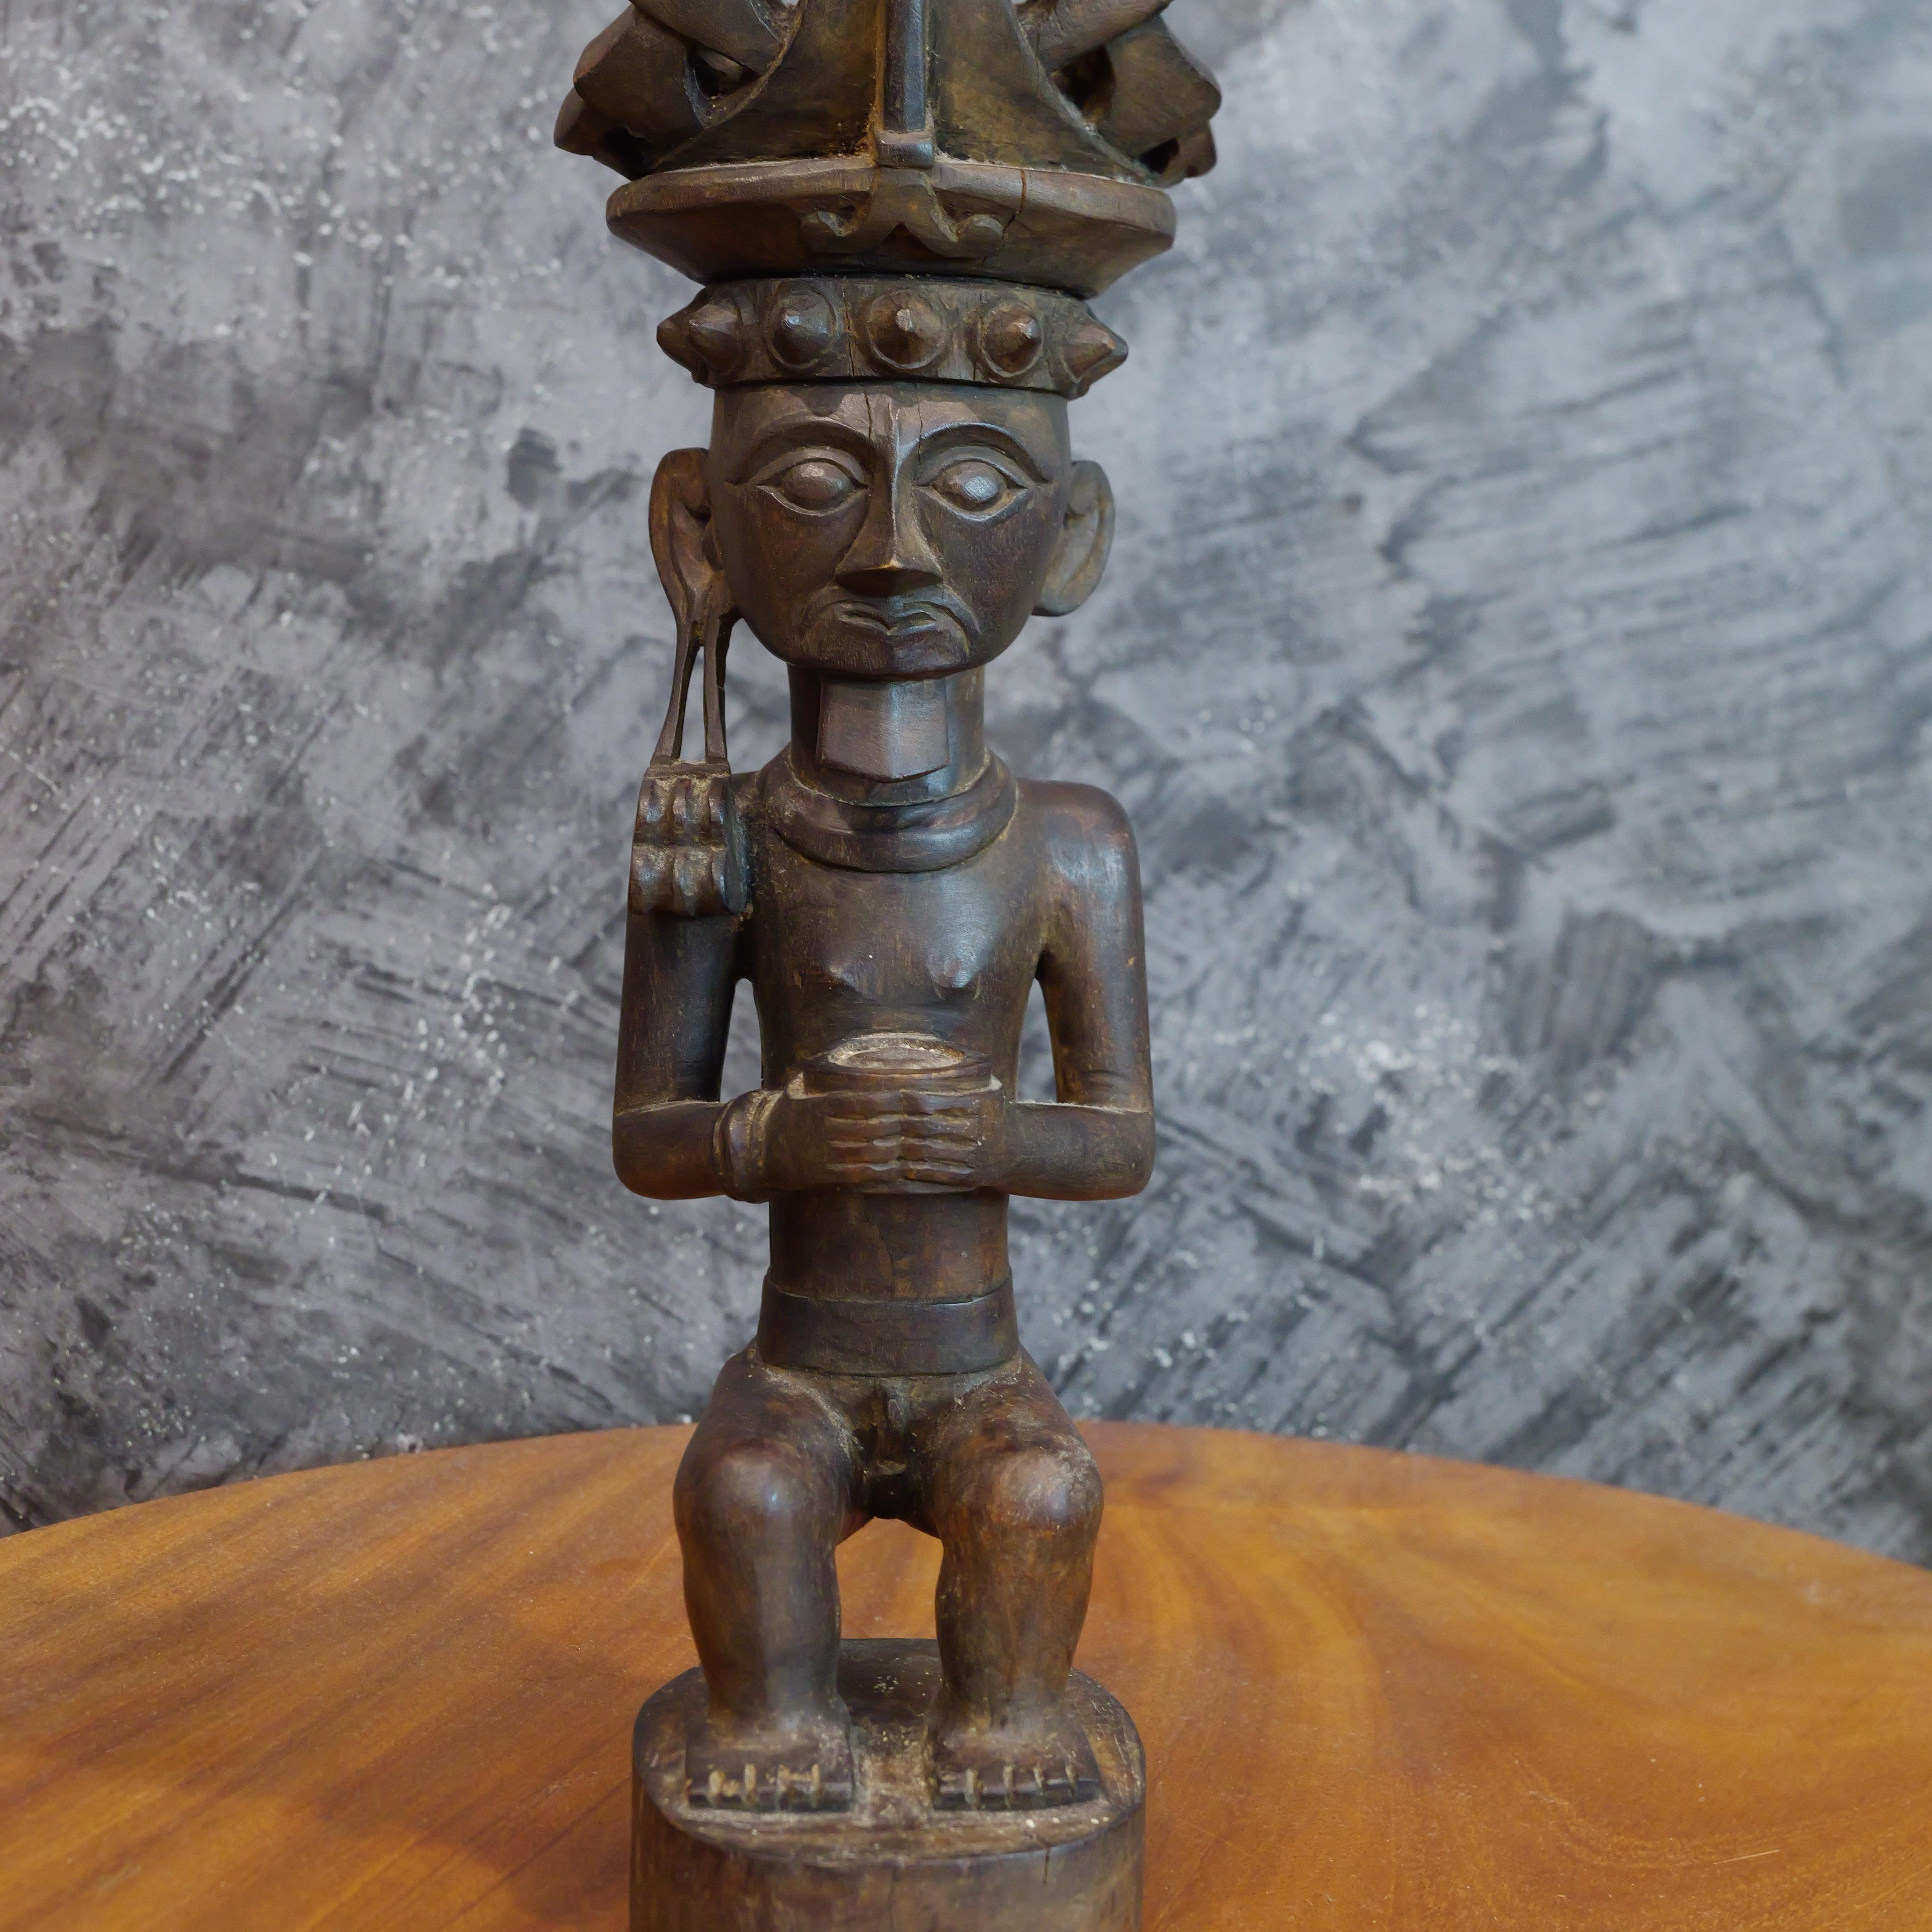 Cette statue en bois de Siraha Salawa, une noble figure ancestrale de Nias originaire d'Indonésie, est un exemple frappant de l'art et de l'héritage culturel de Nias. Sculptée dans une seule pièce de bois, cette statue se dresse fièrement, incarnant